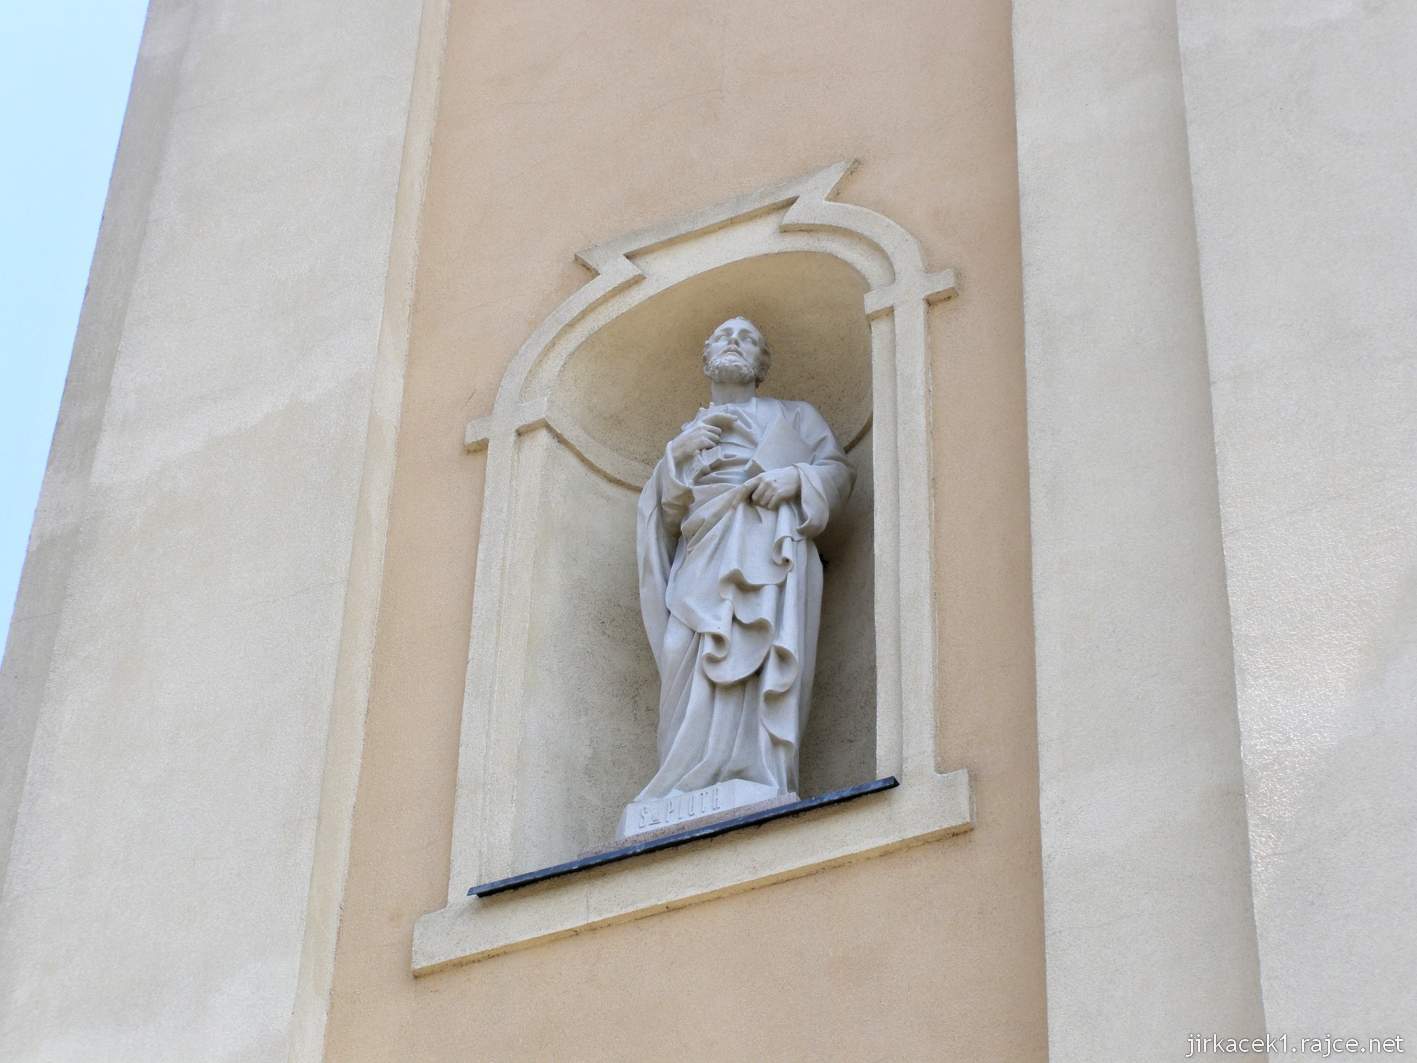 Tworków - kostel sv. Petra a Pavla (Kościół Św. Piotra i Pawła w Tworkowie) - socha sv. Petra nad vchodem do kostela